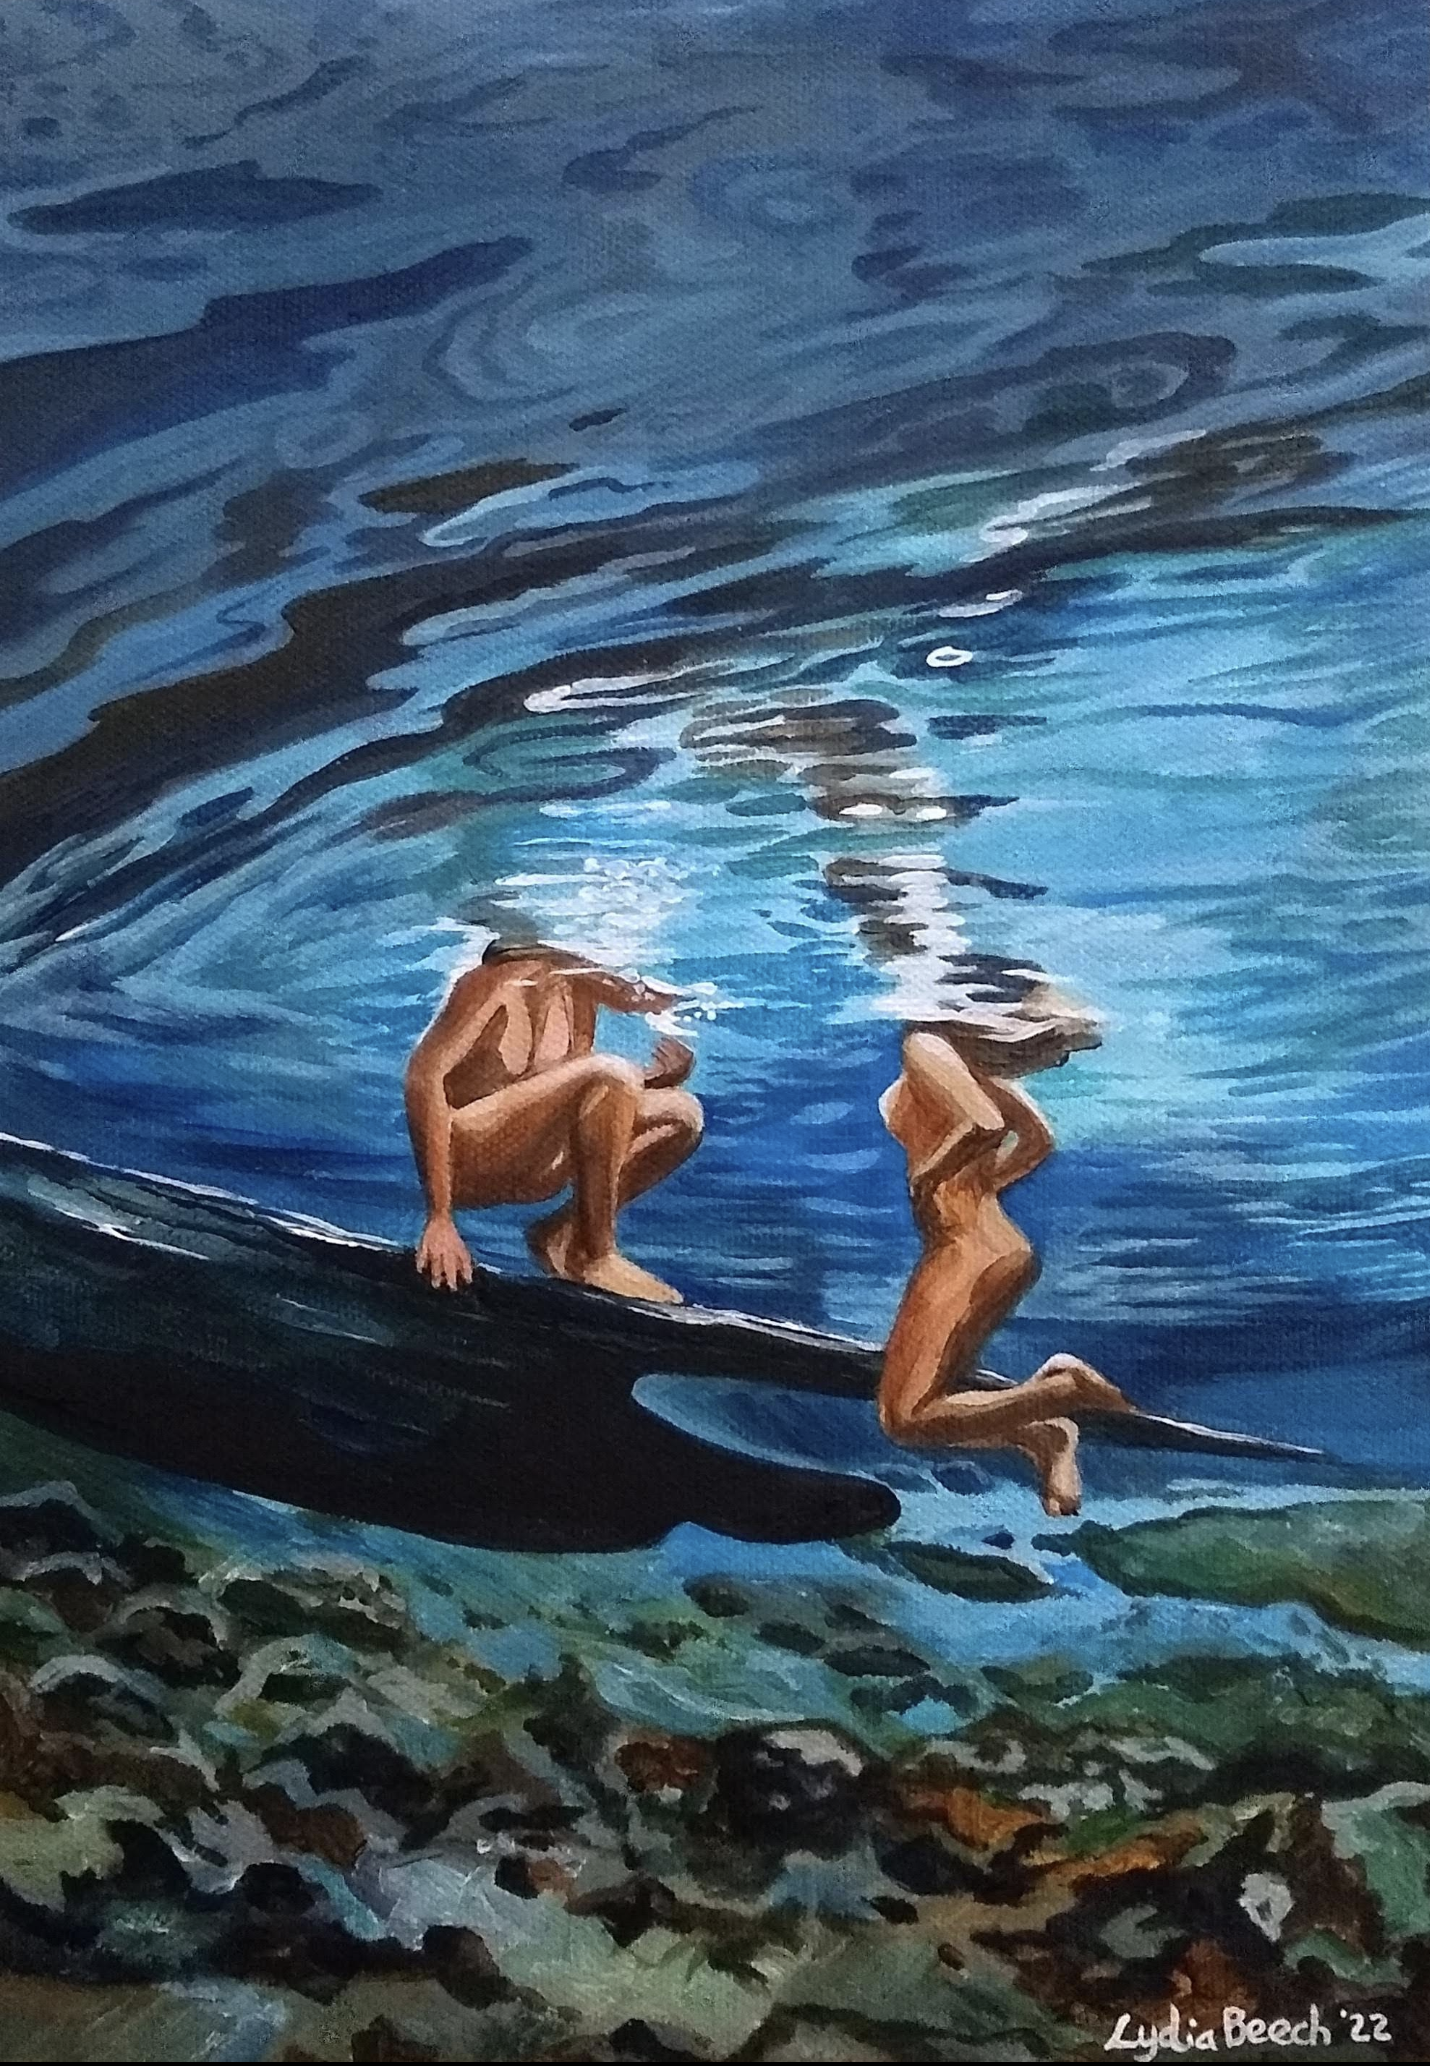 Underwater Series - Original Paintings